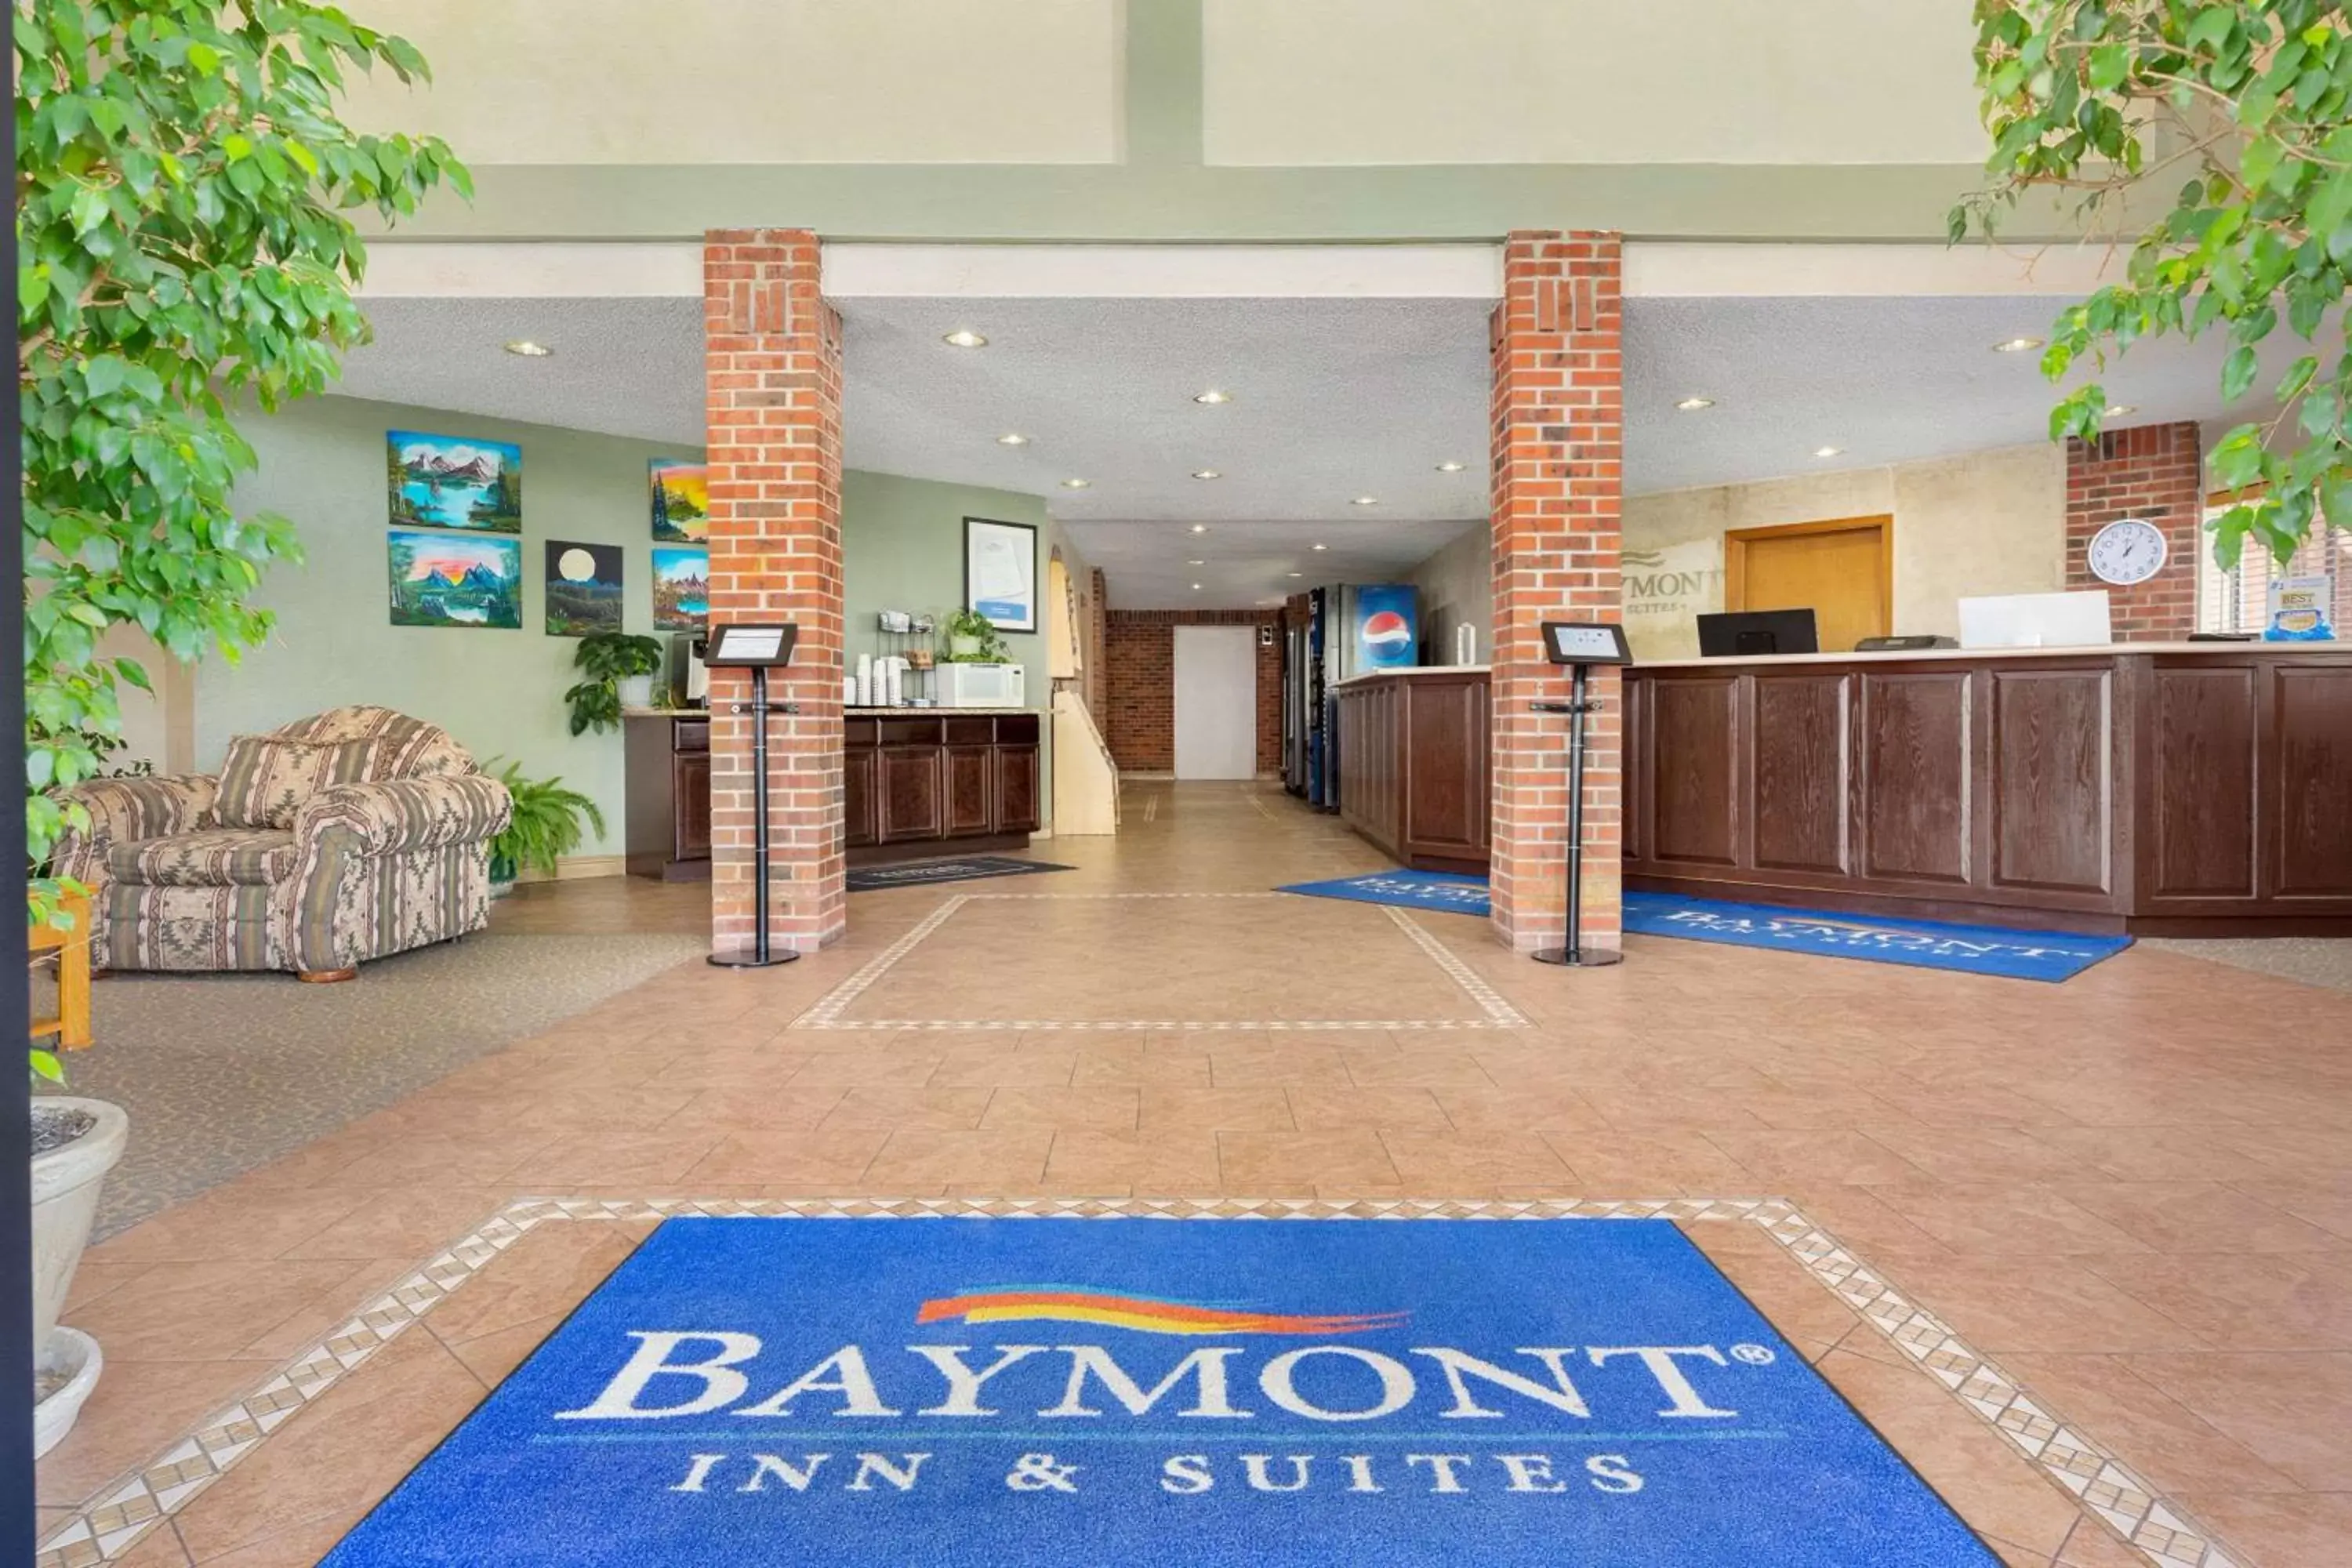 Lobby or reception, Lobby/Reception in Baymont by Wyndham Cortez